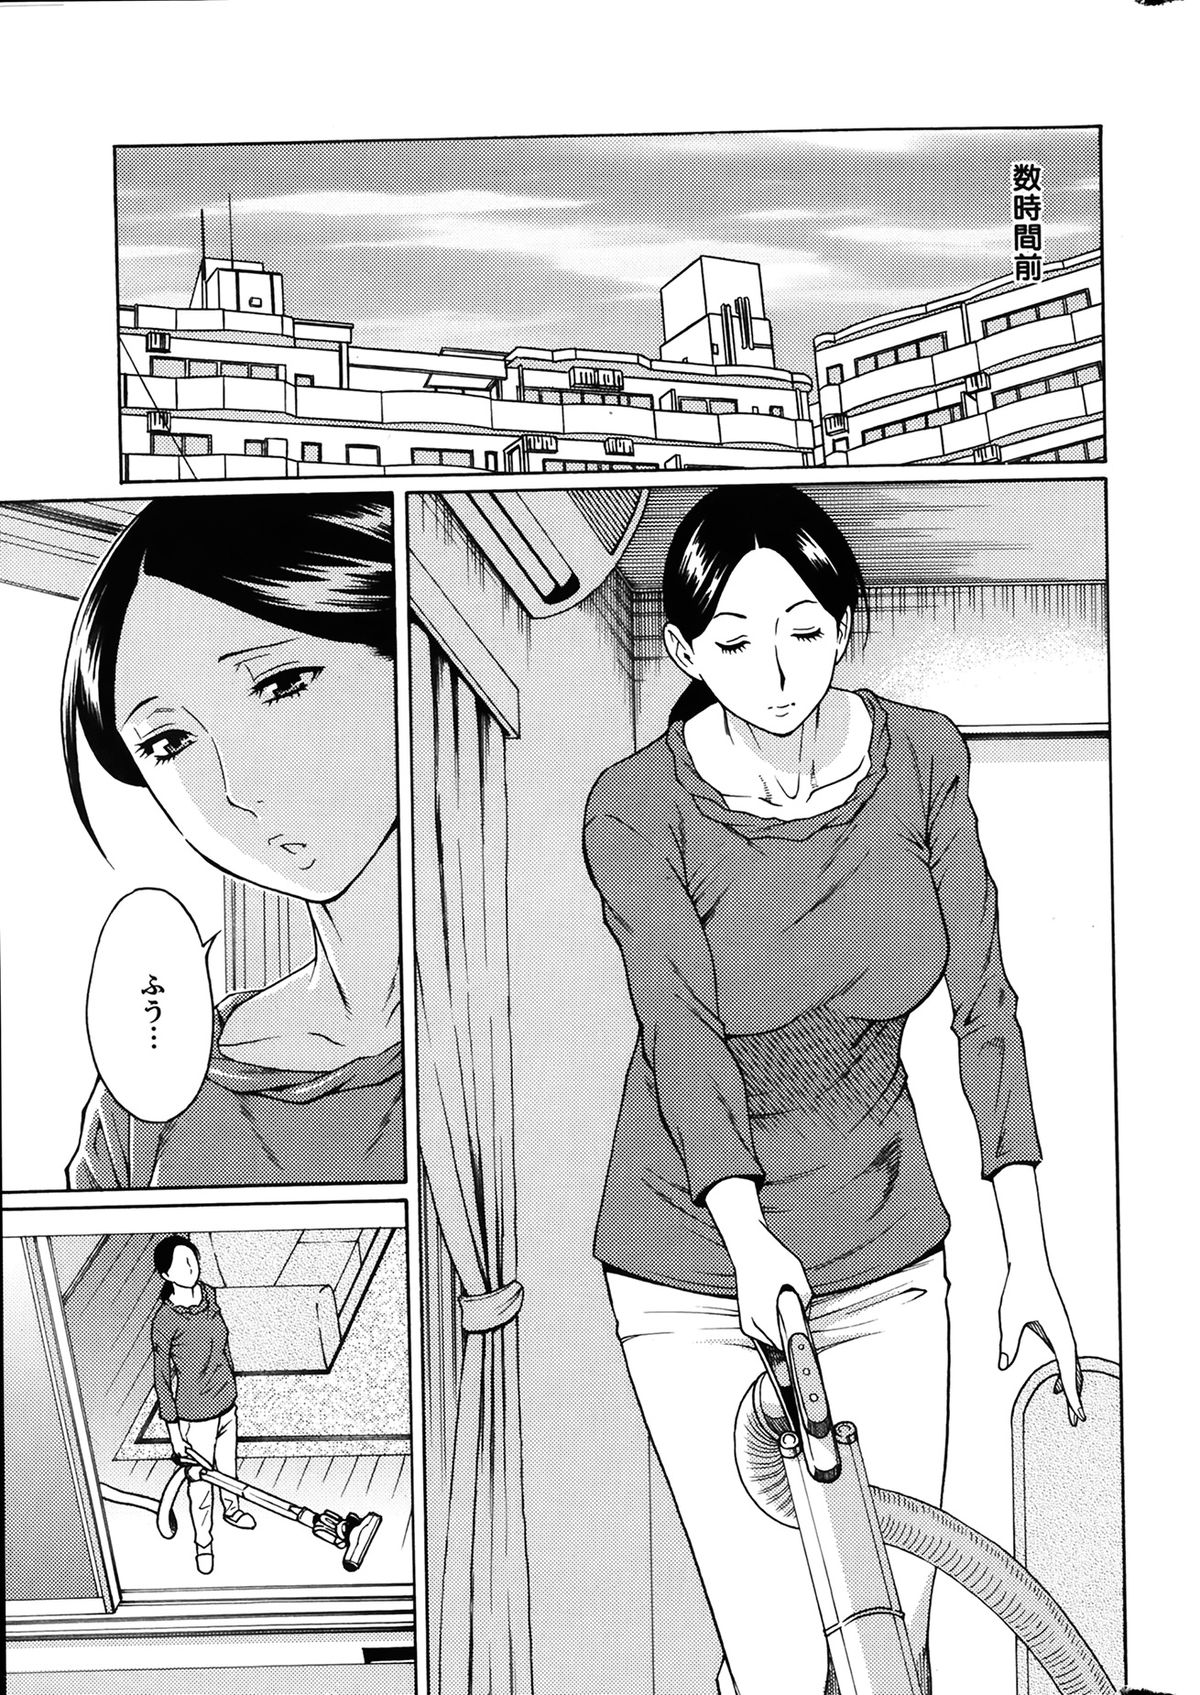 [Takasugi Kou] Madam Palace Ch.1-6 page 5 full